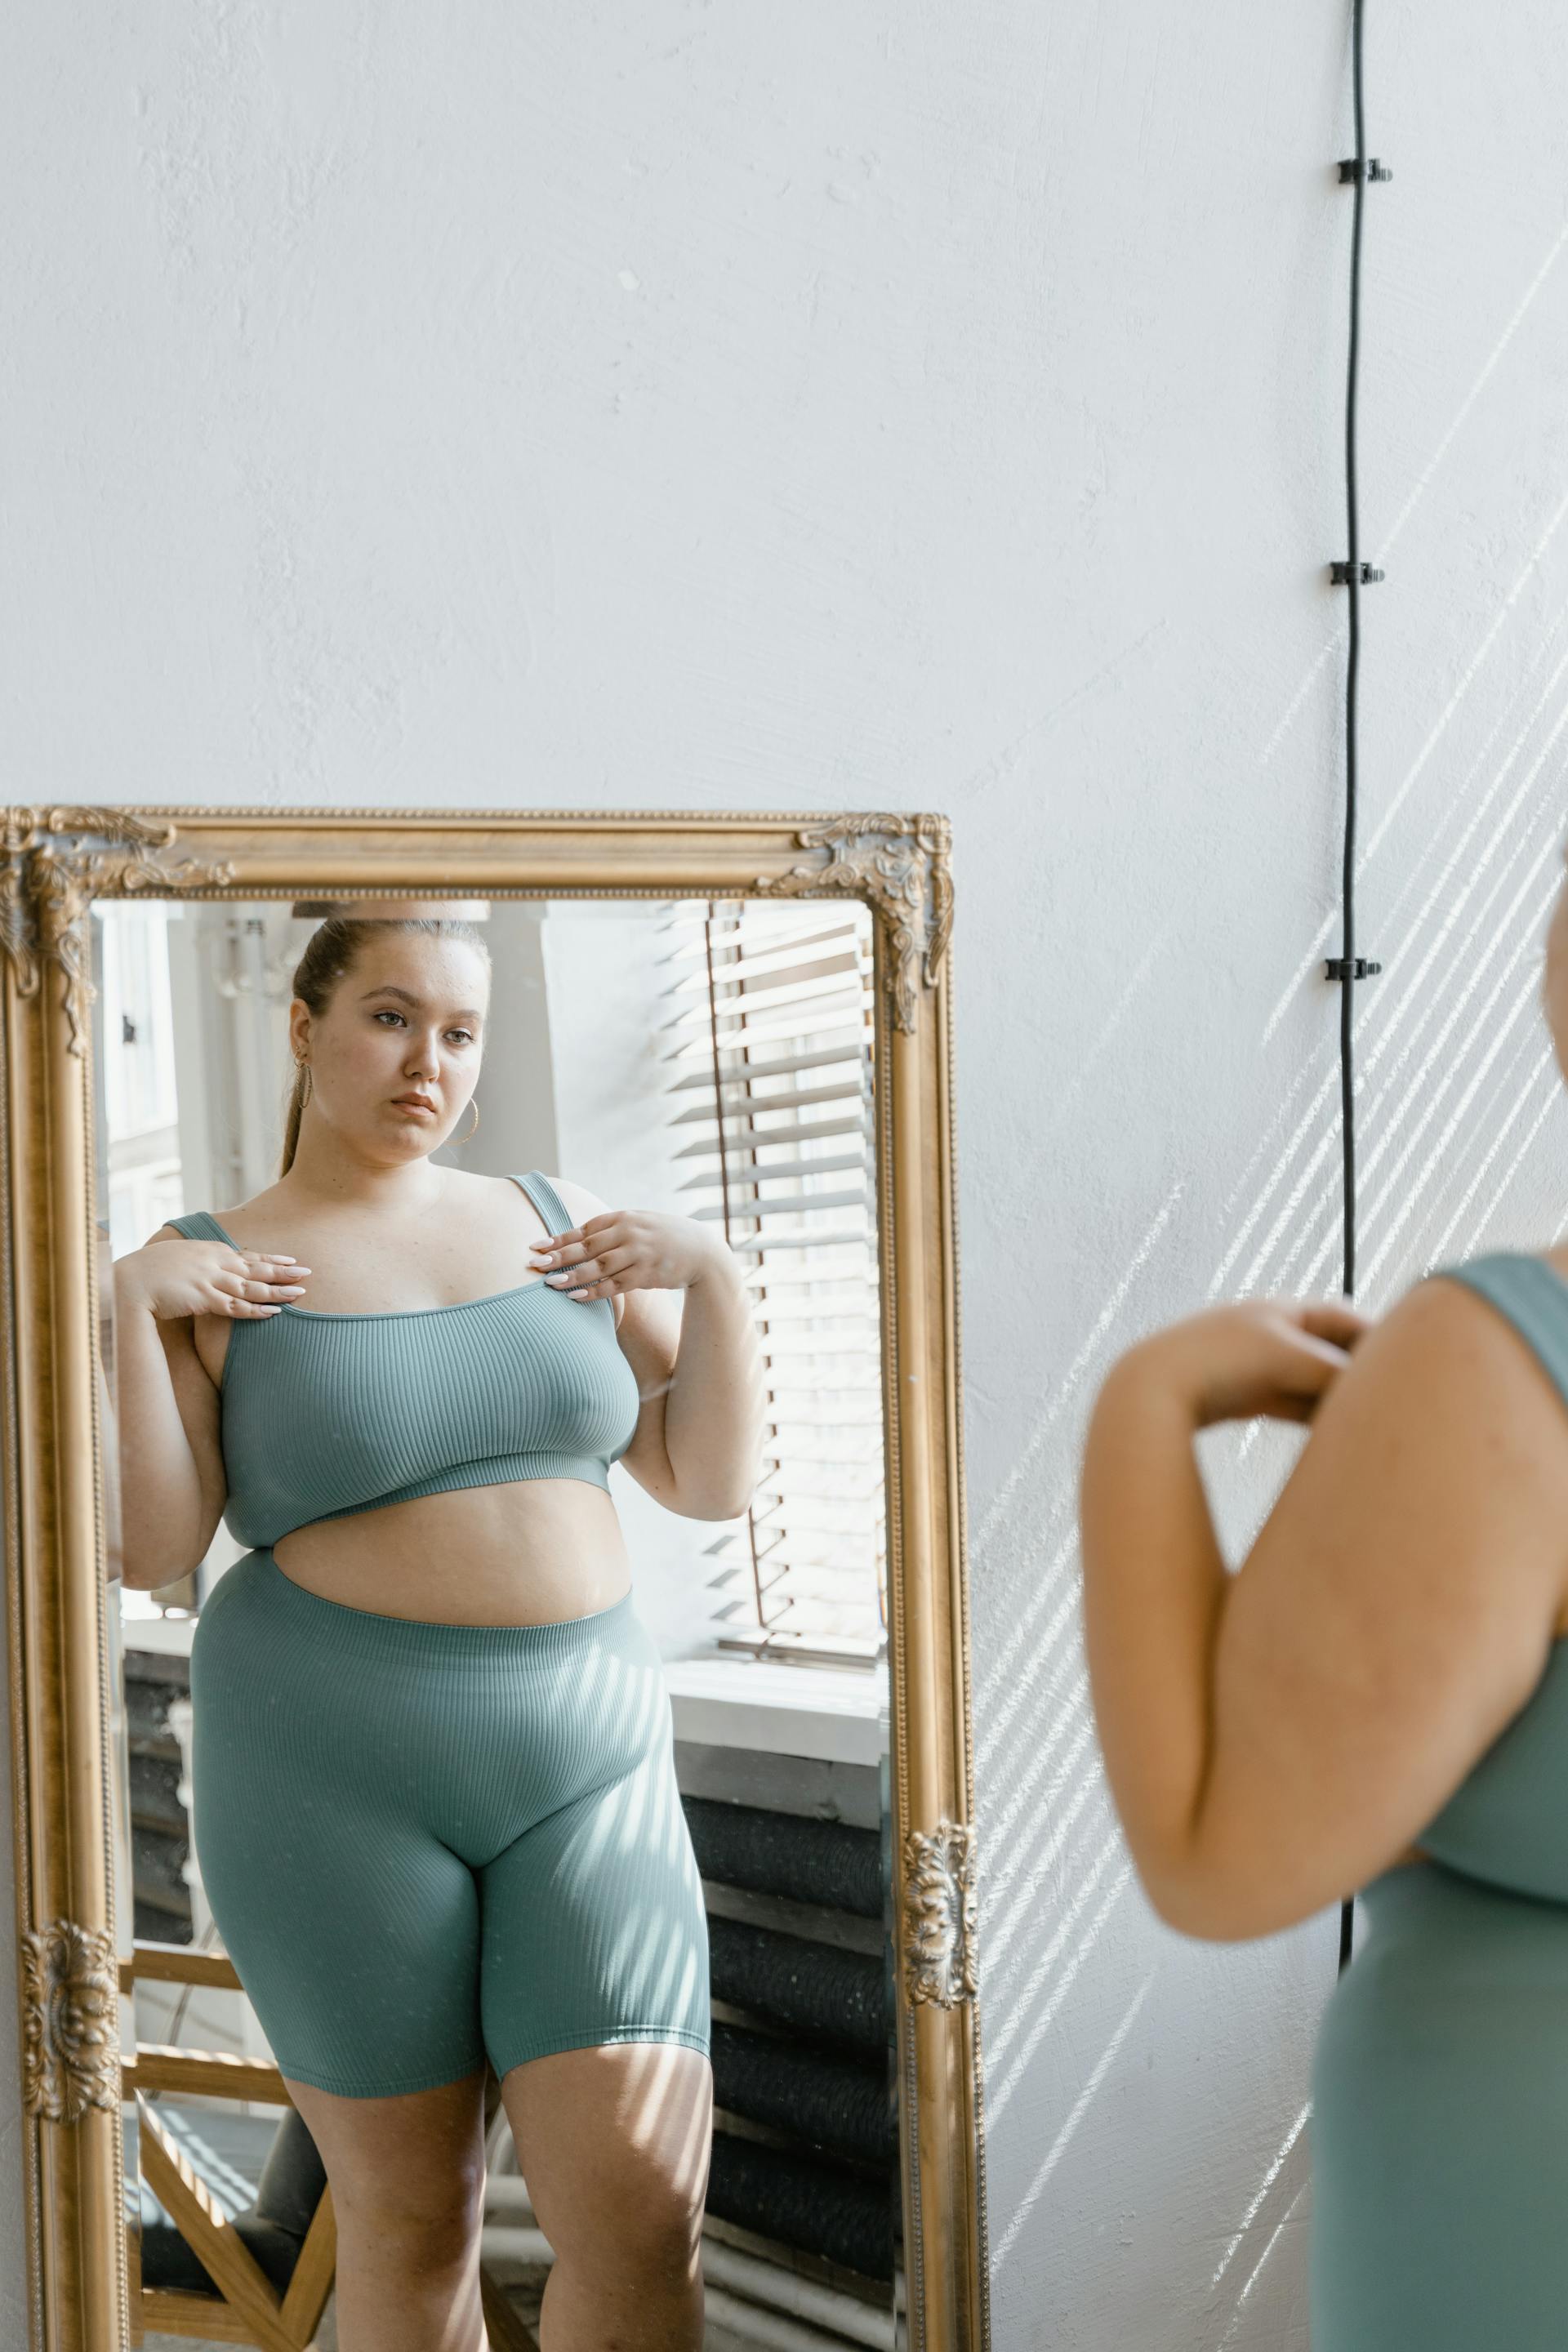 Mujer mirándose al espejo | Fuente: Pexels